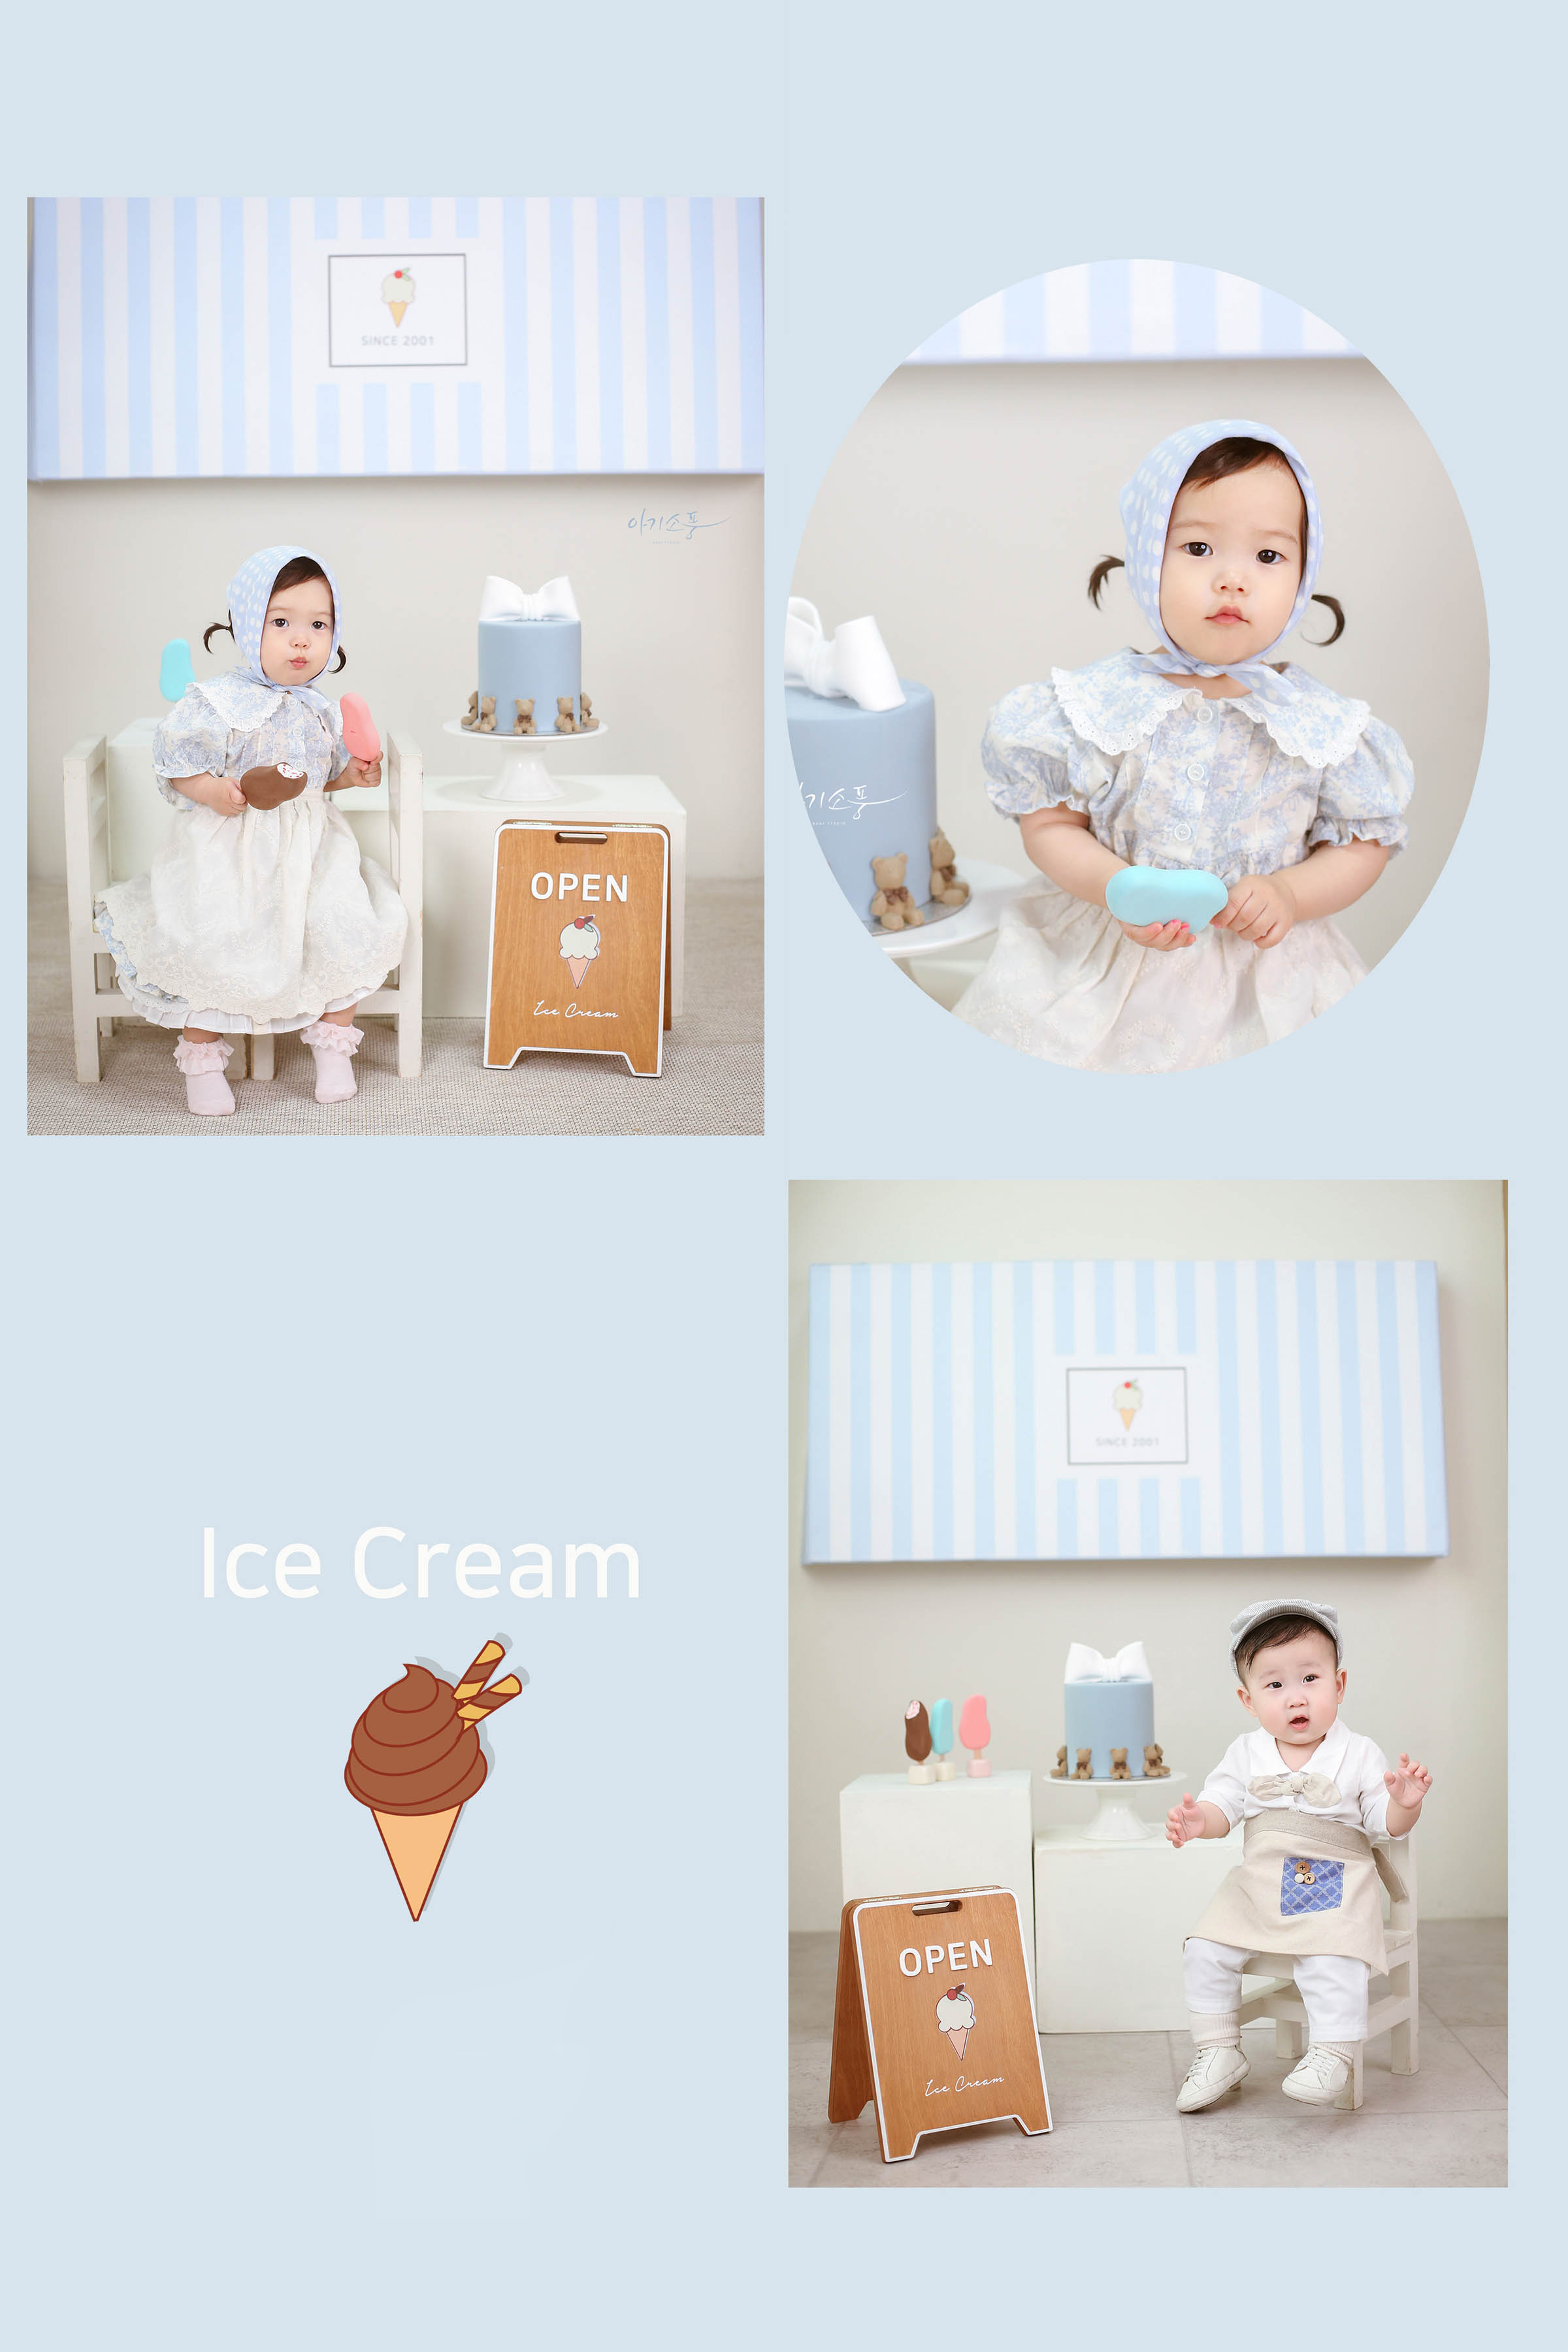 돌 아이스크림 컨셉북 8x12.jpg